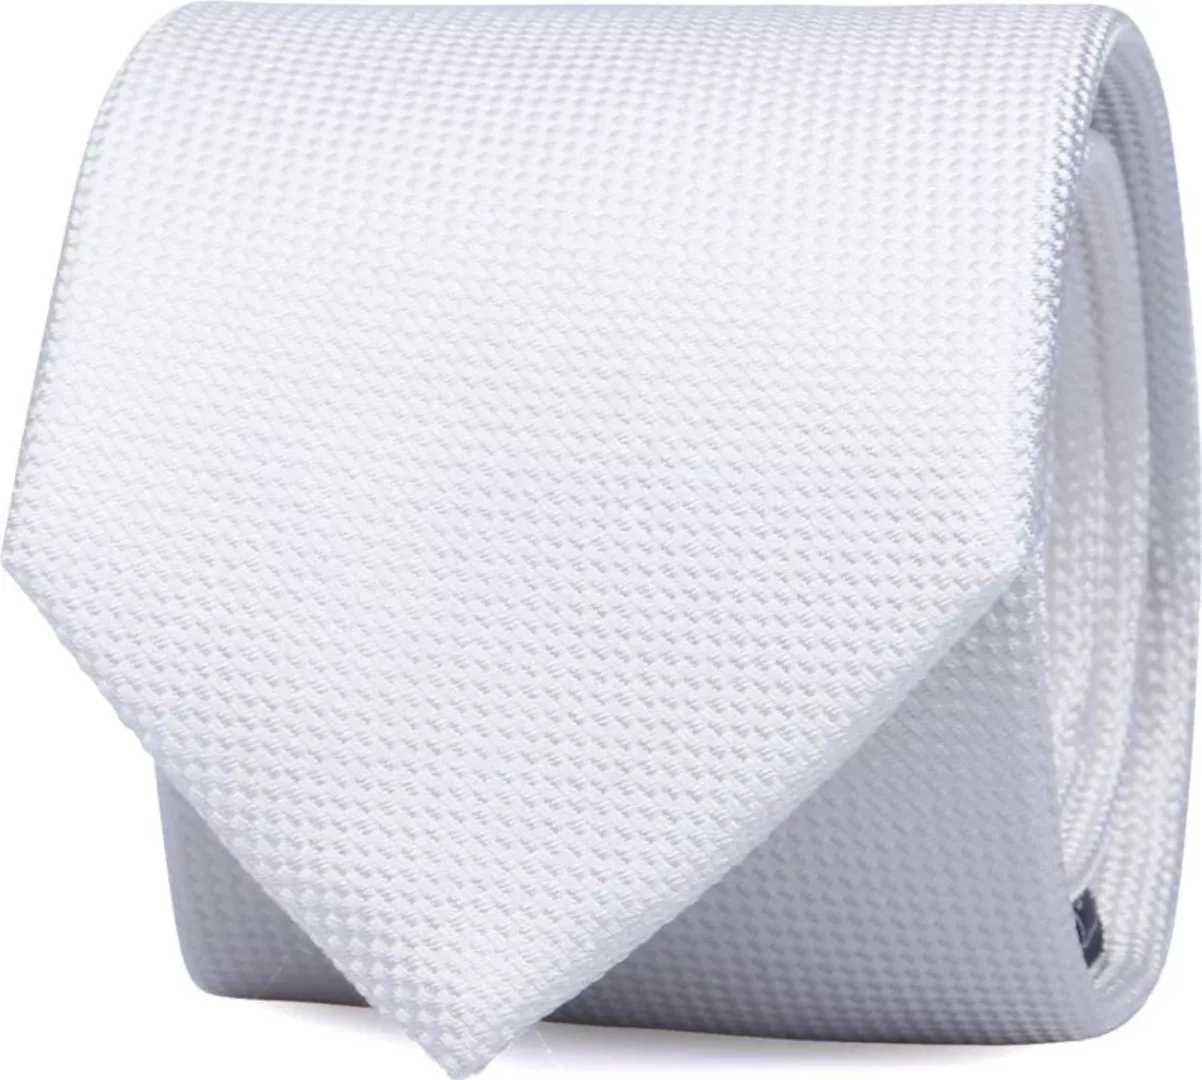 Suitable Seide Krawatte Weiß - günstig online kaufen